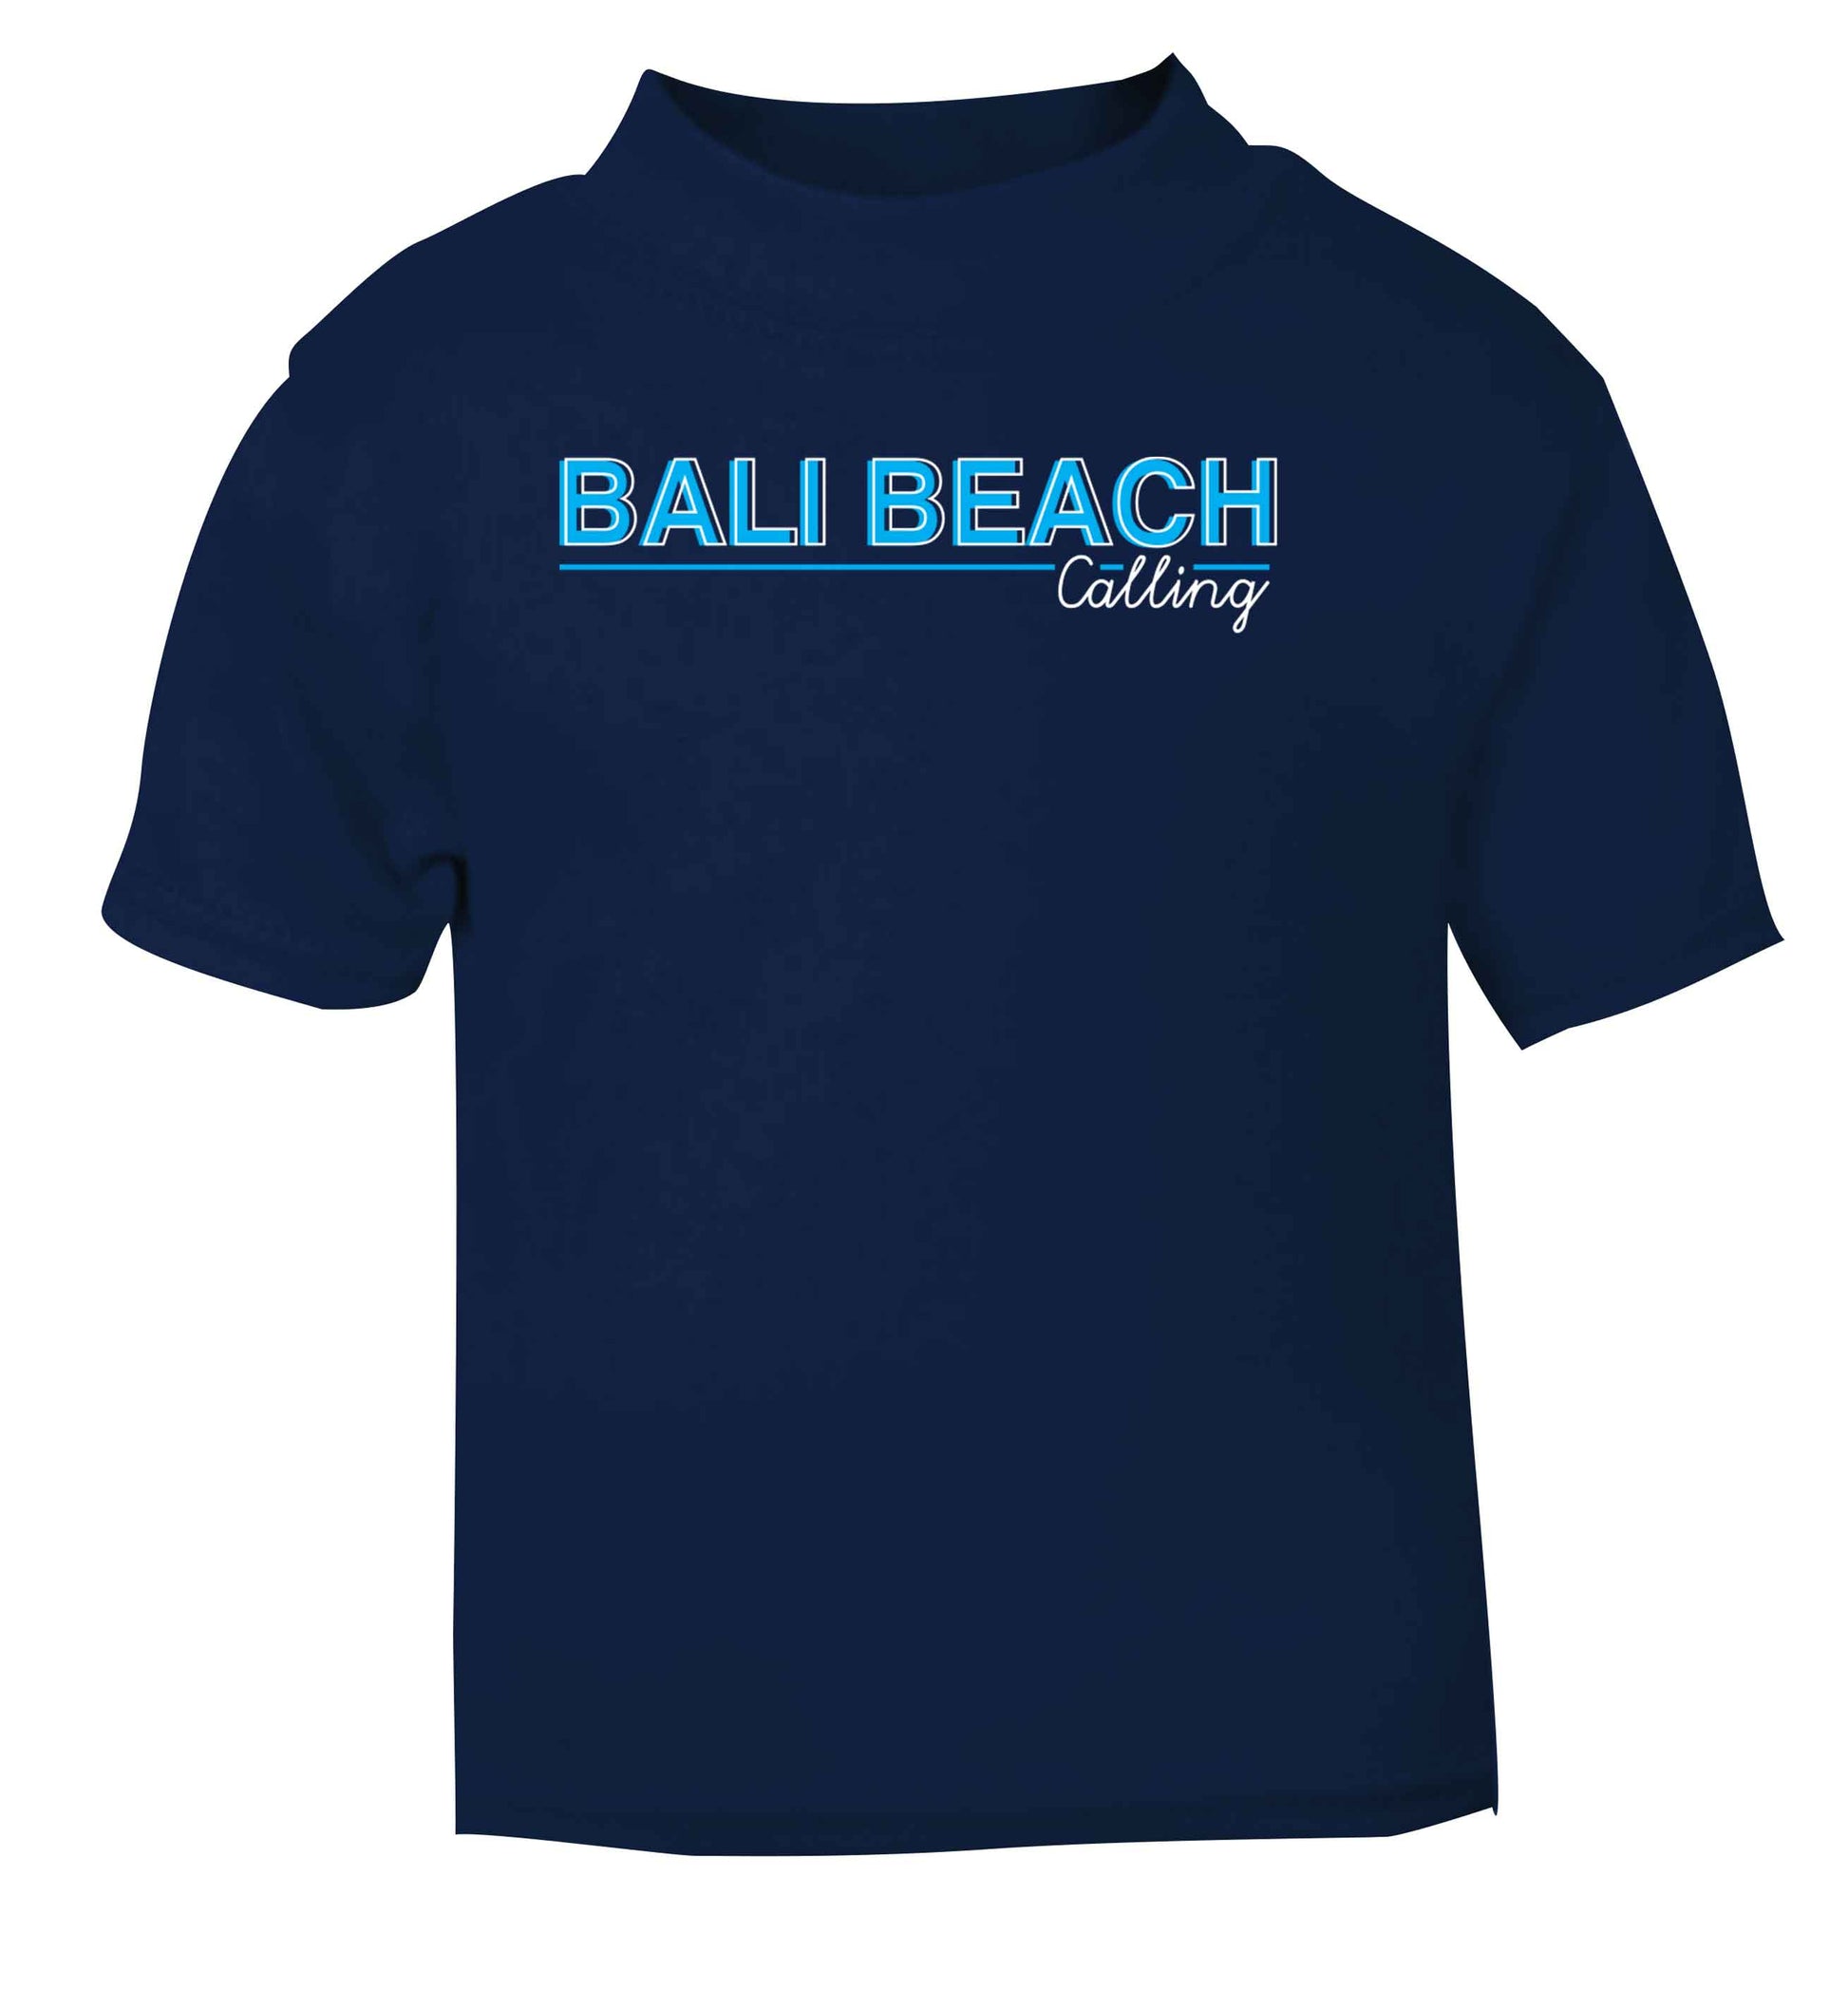 Bali beach calling navy Baby Toddler Tshirt 2 Years